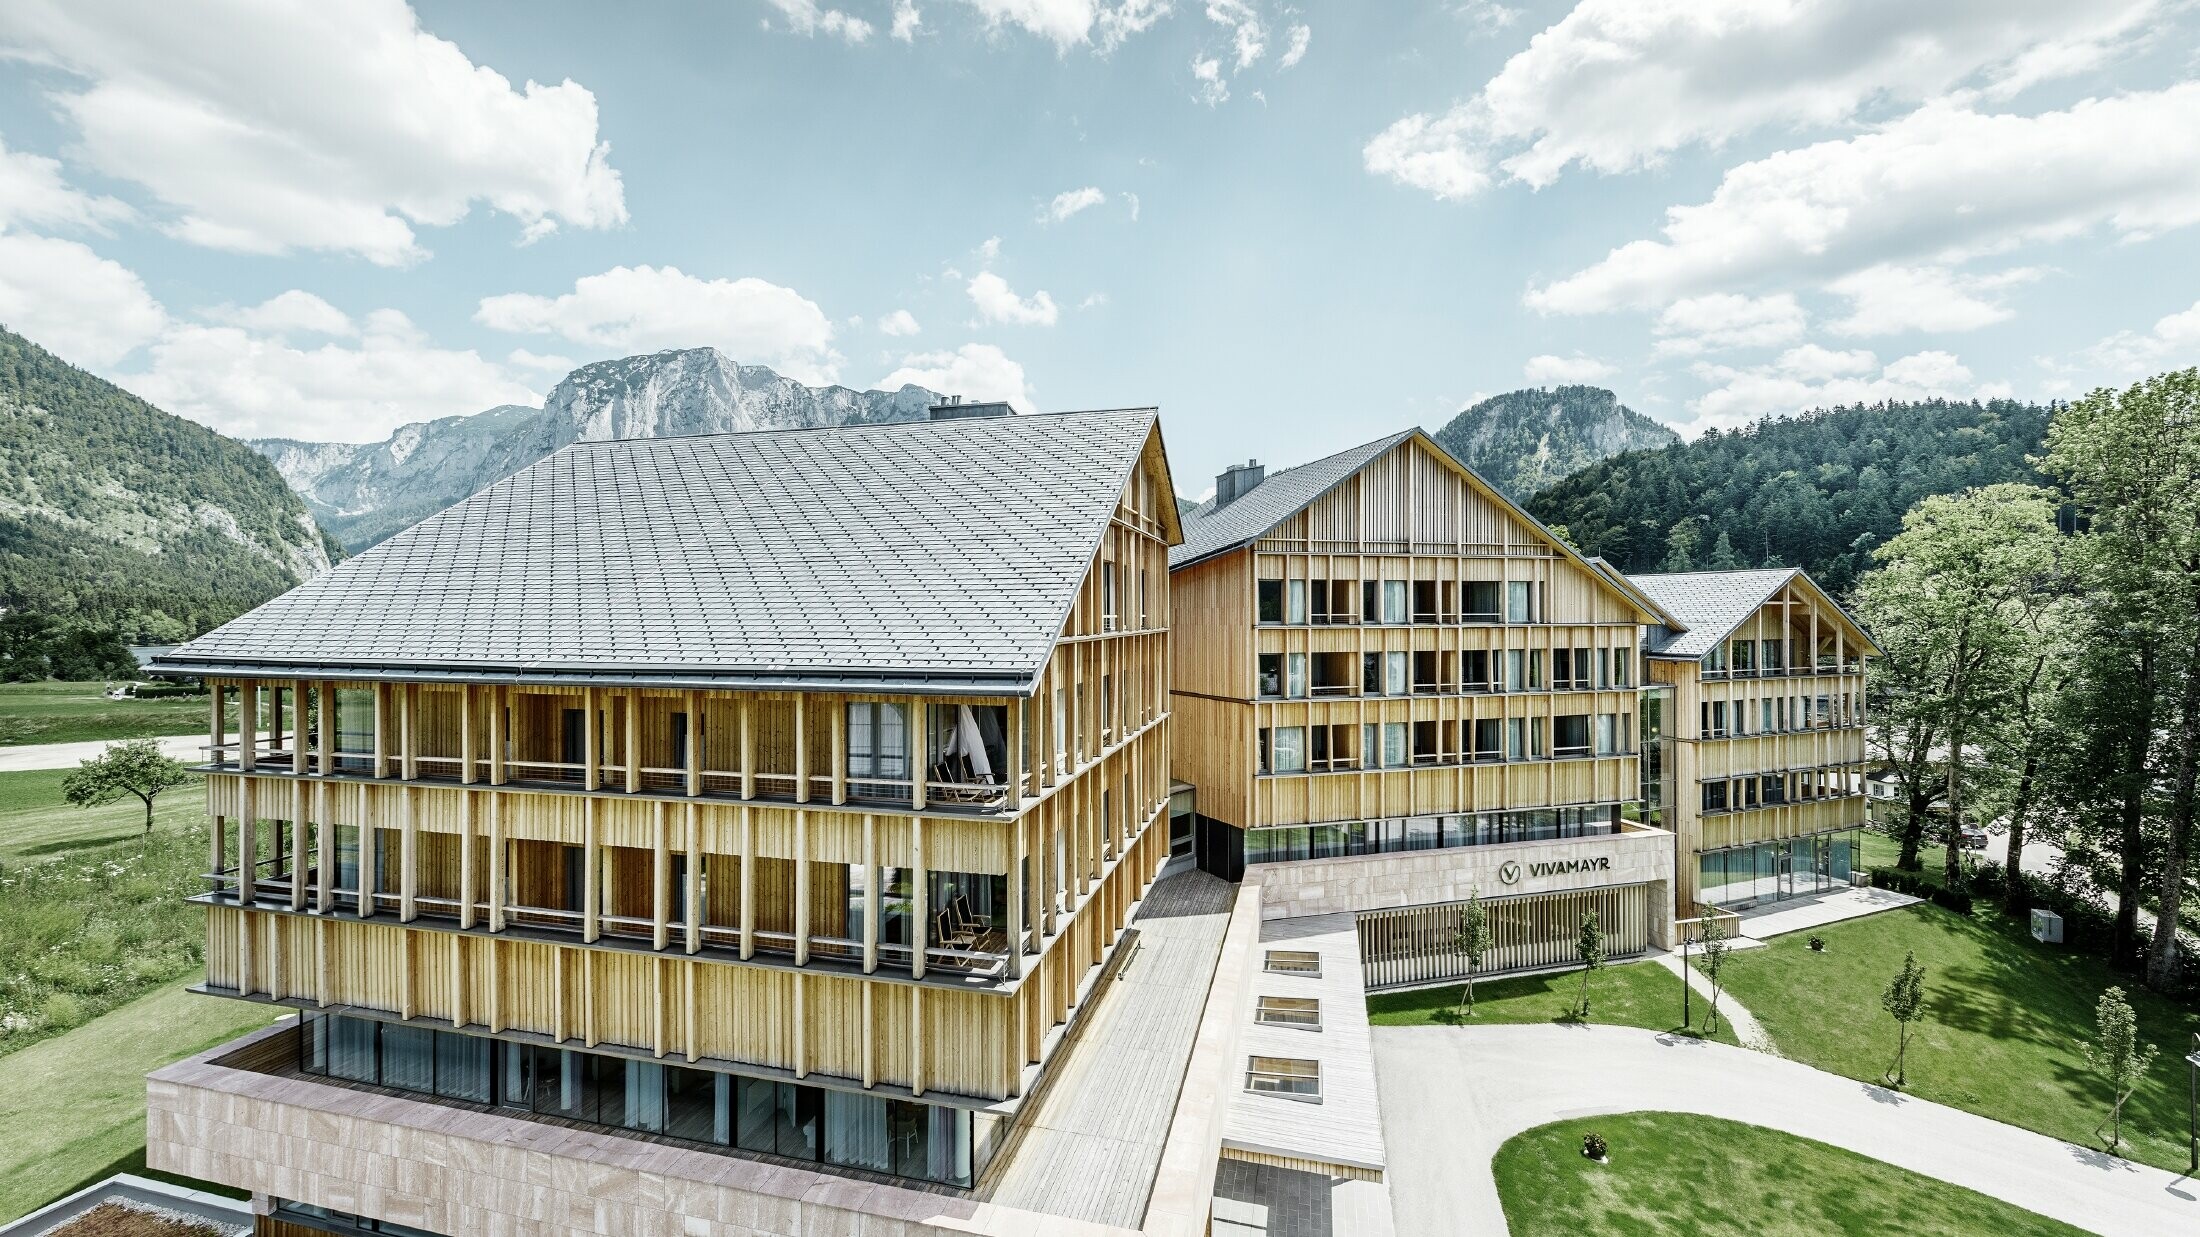 Hôtel Vivamayr à Altaussee, avec façade en bois et toit en bardeaux PREFA